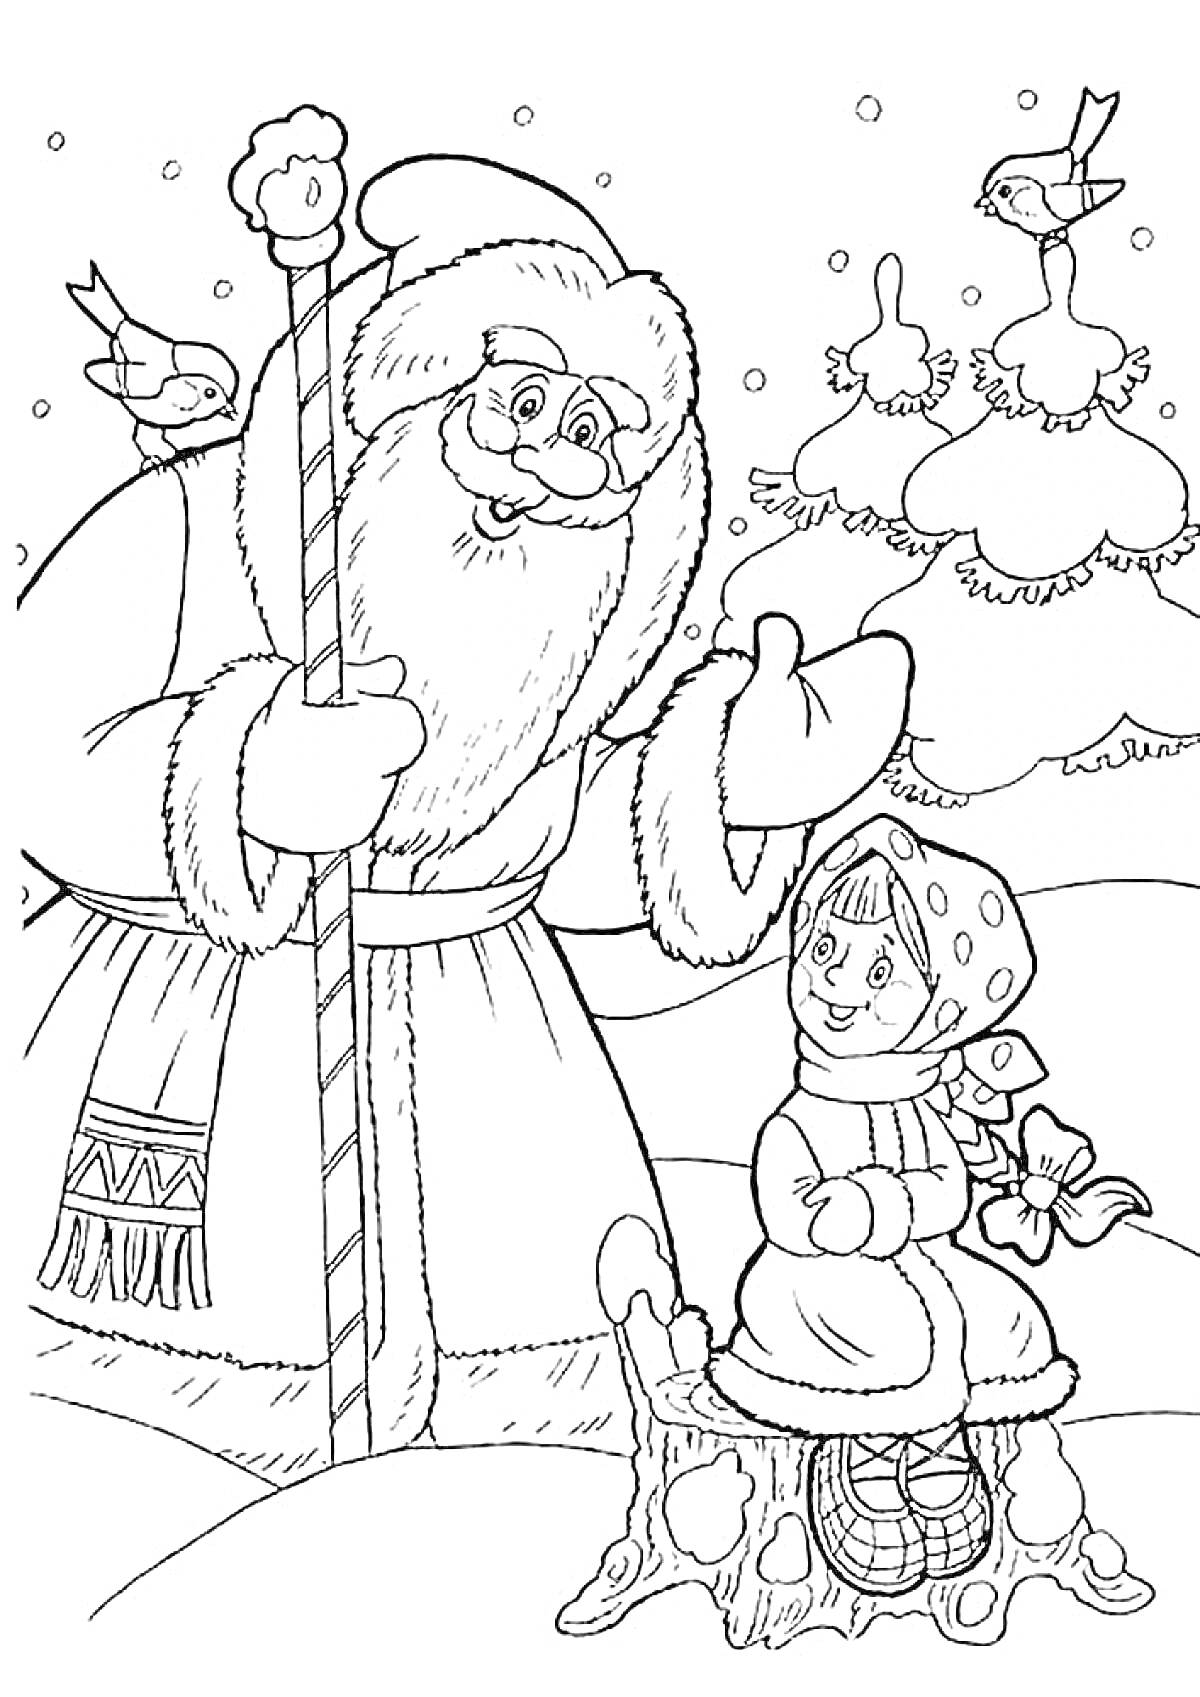 Раскраска Морозко с посохом и девочка, сидящая на пне, снегири, зимний лес и падающий снег